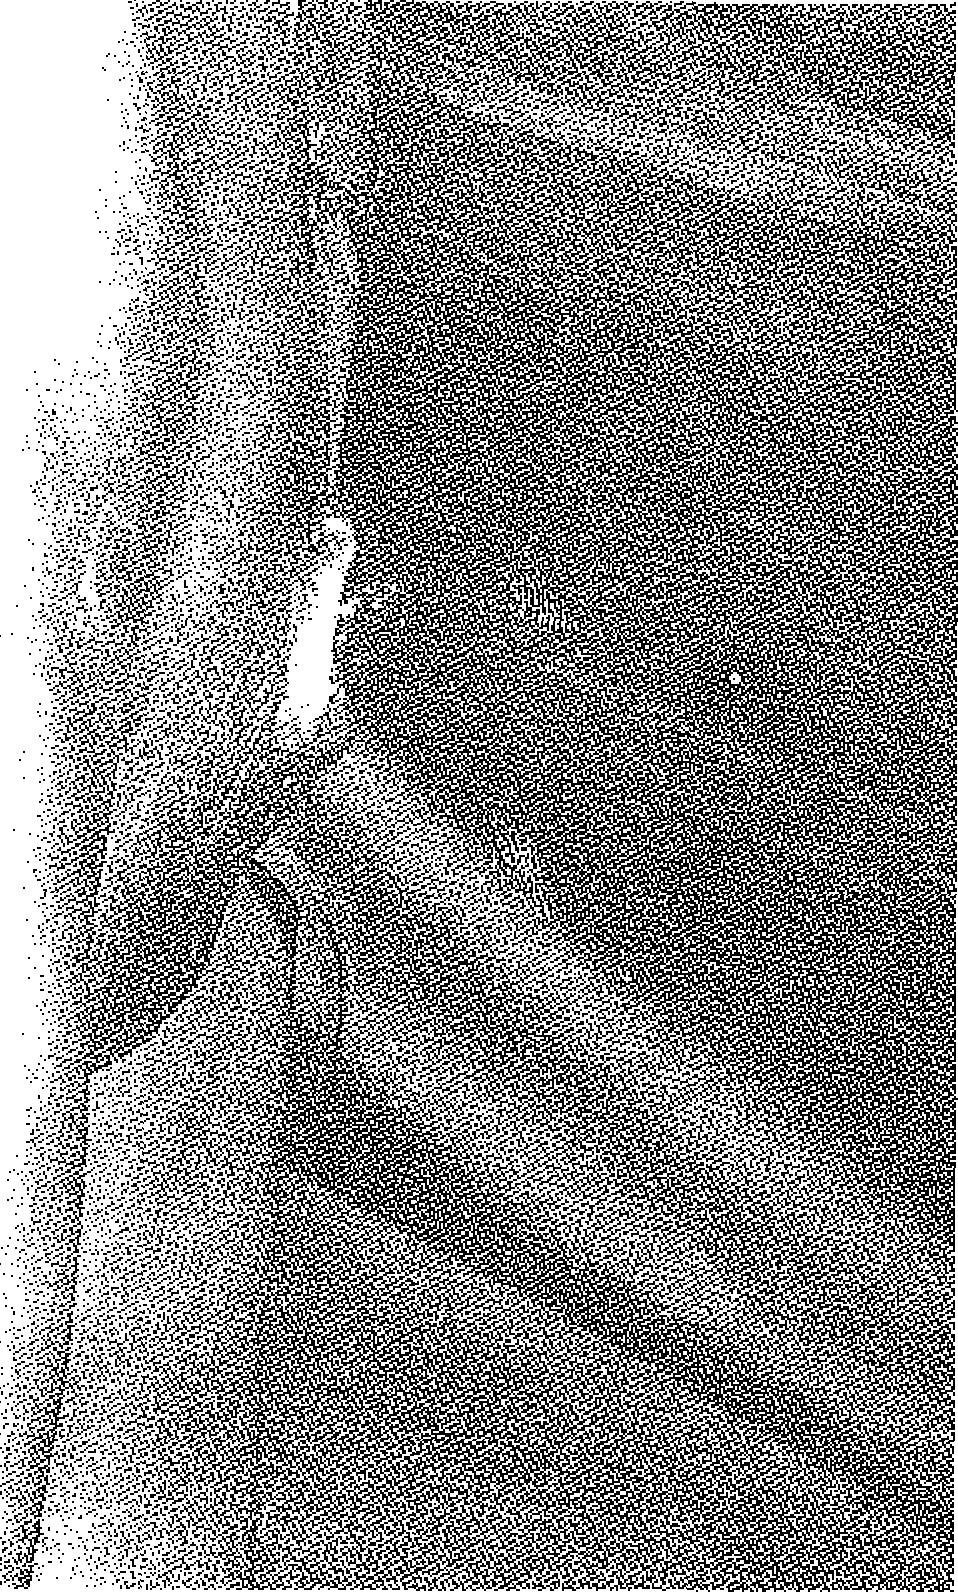 Üret- ŞEKİL 9 : İkinci olgunun operasyon öncesi görünümü ra yine sol supraklavikular kılsızbölgeden tamkalmlıkta deri grefti ile oluşturuldu.